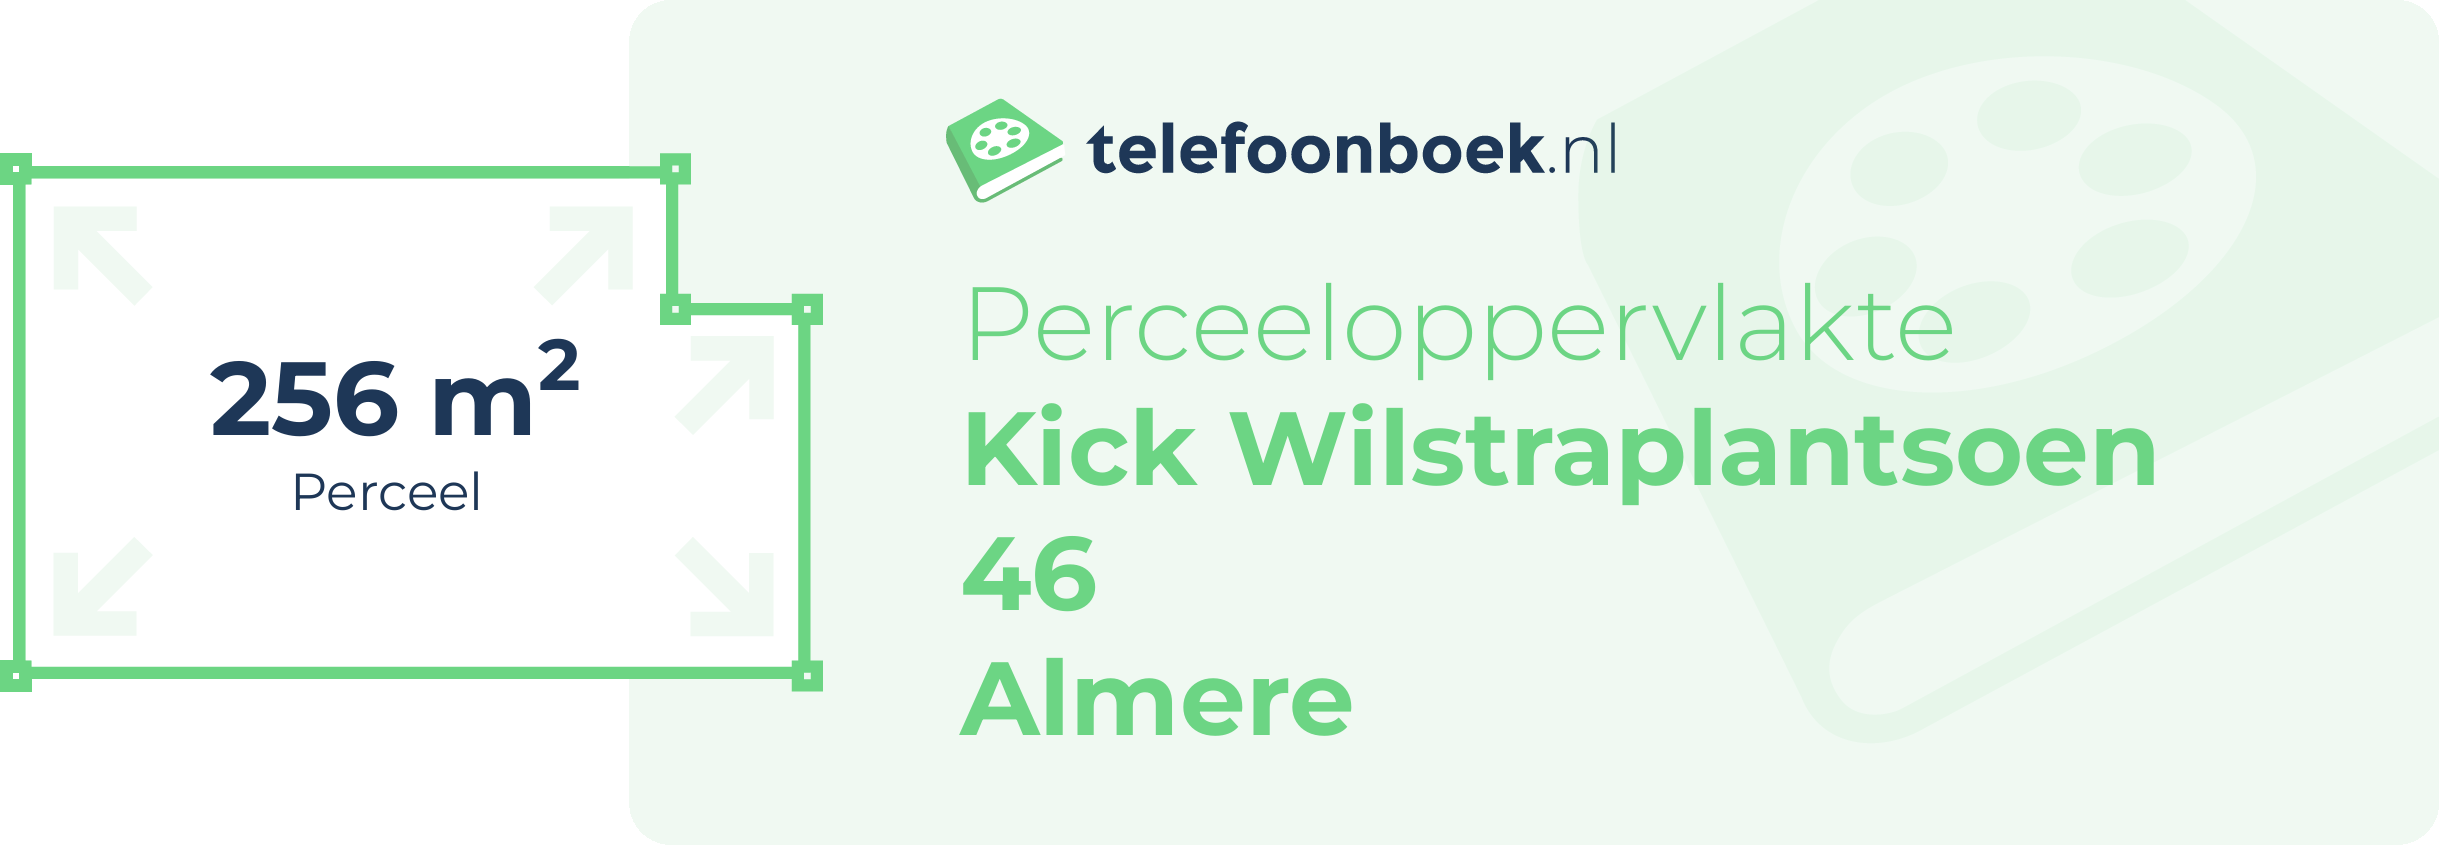 Perceeloppervlakte Kick Wilstraplantsoen 46 Almere